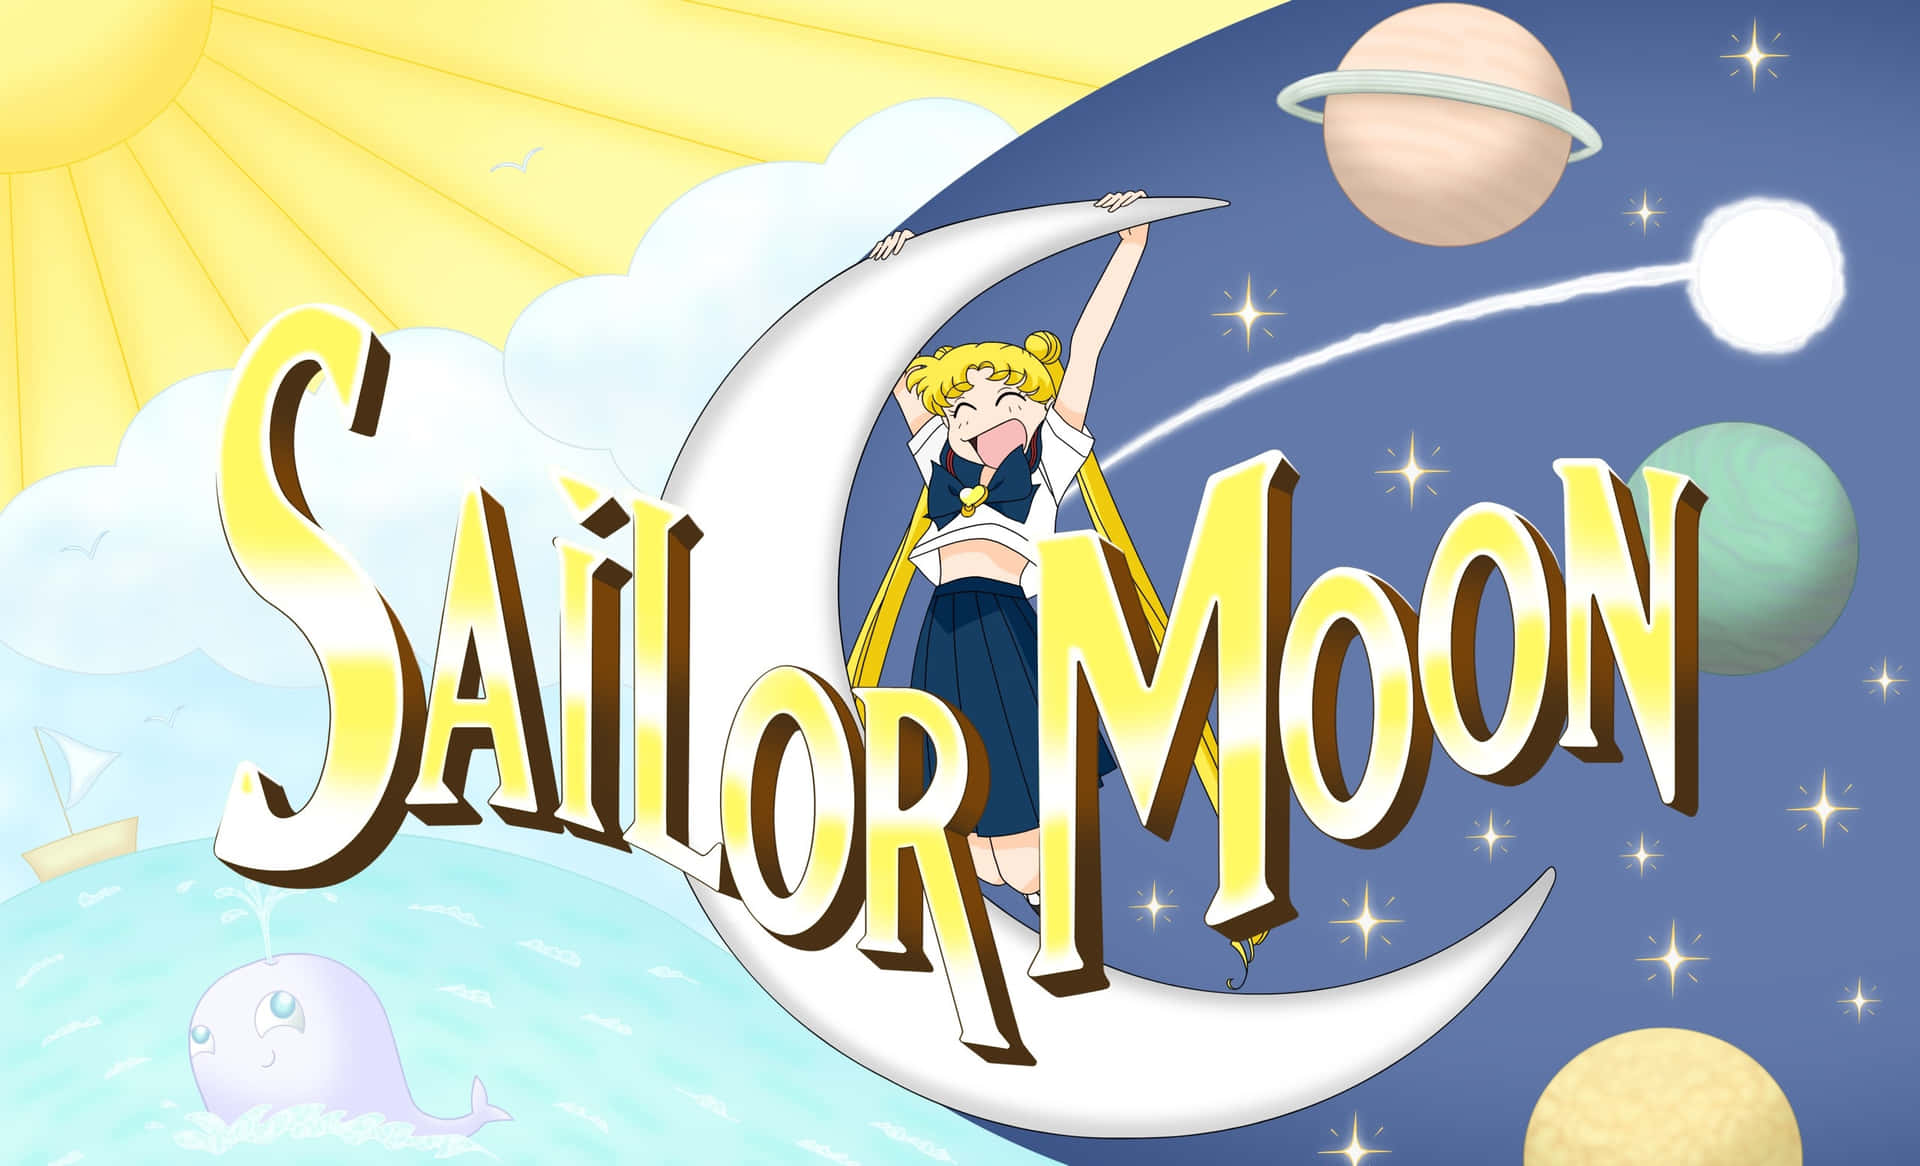 Sailormoon - Liebe Und Gerechtigkeit Verteidigen